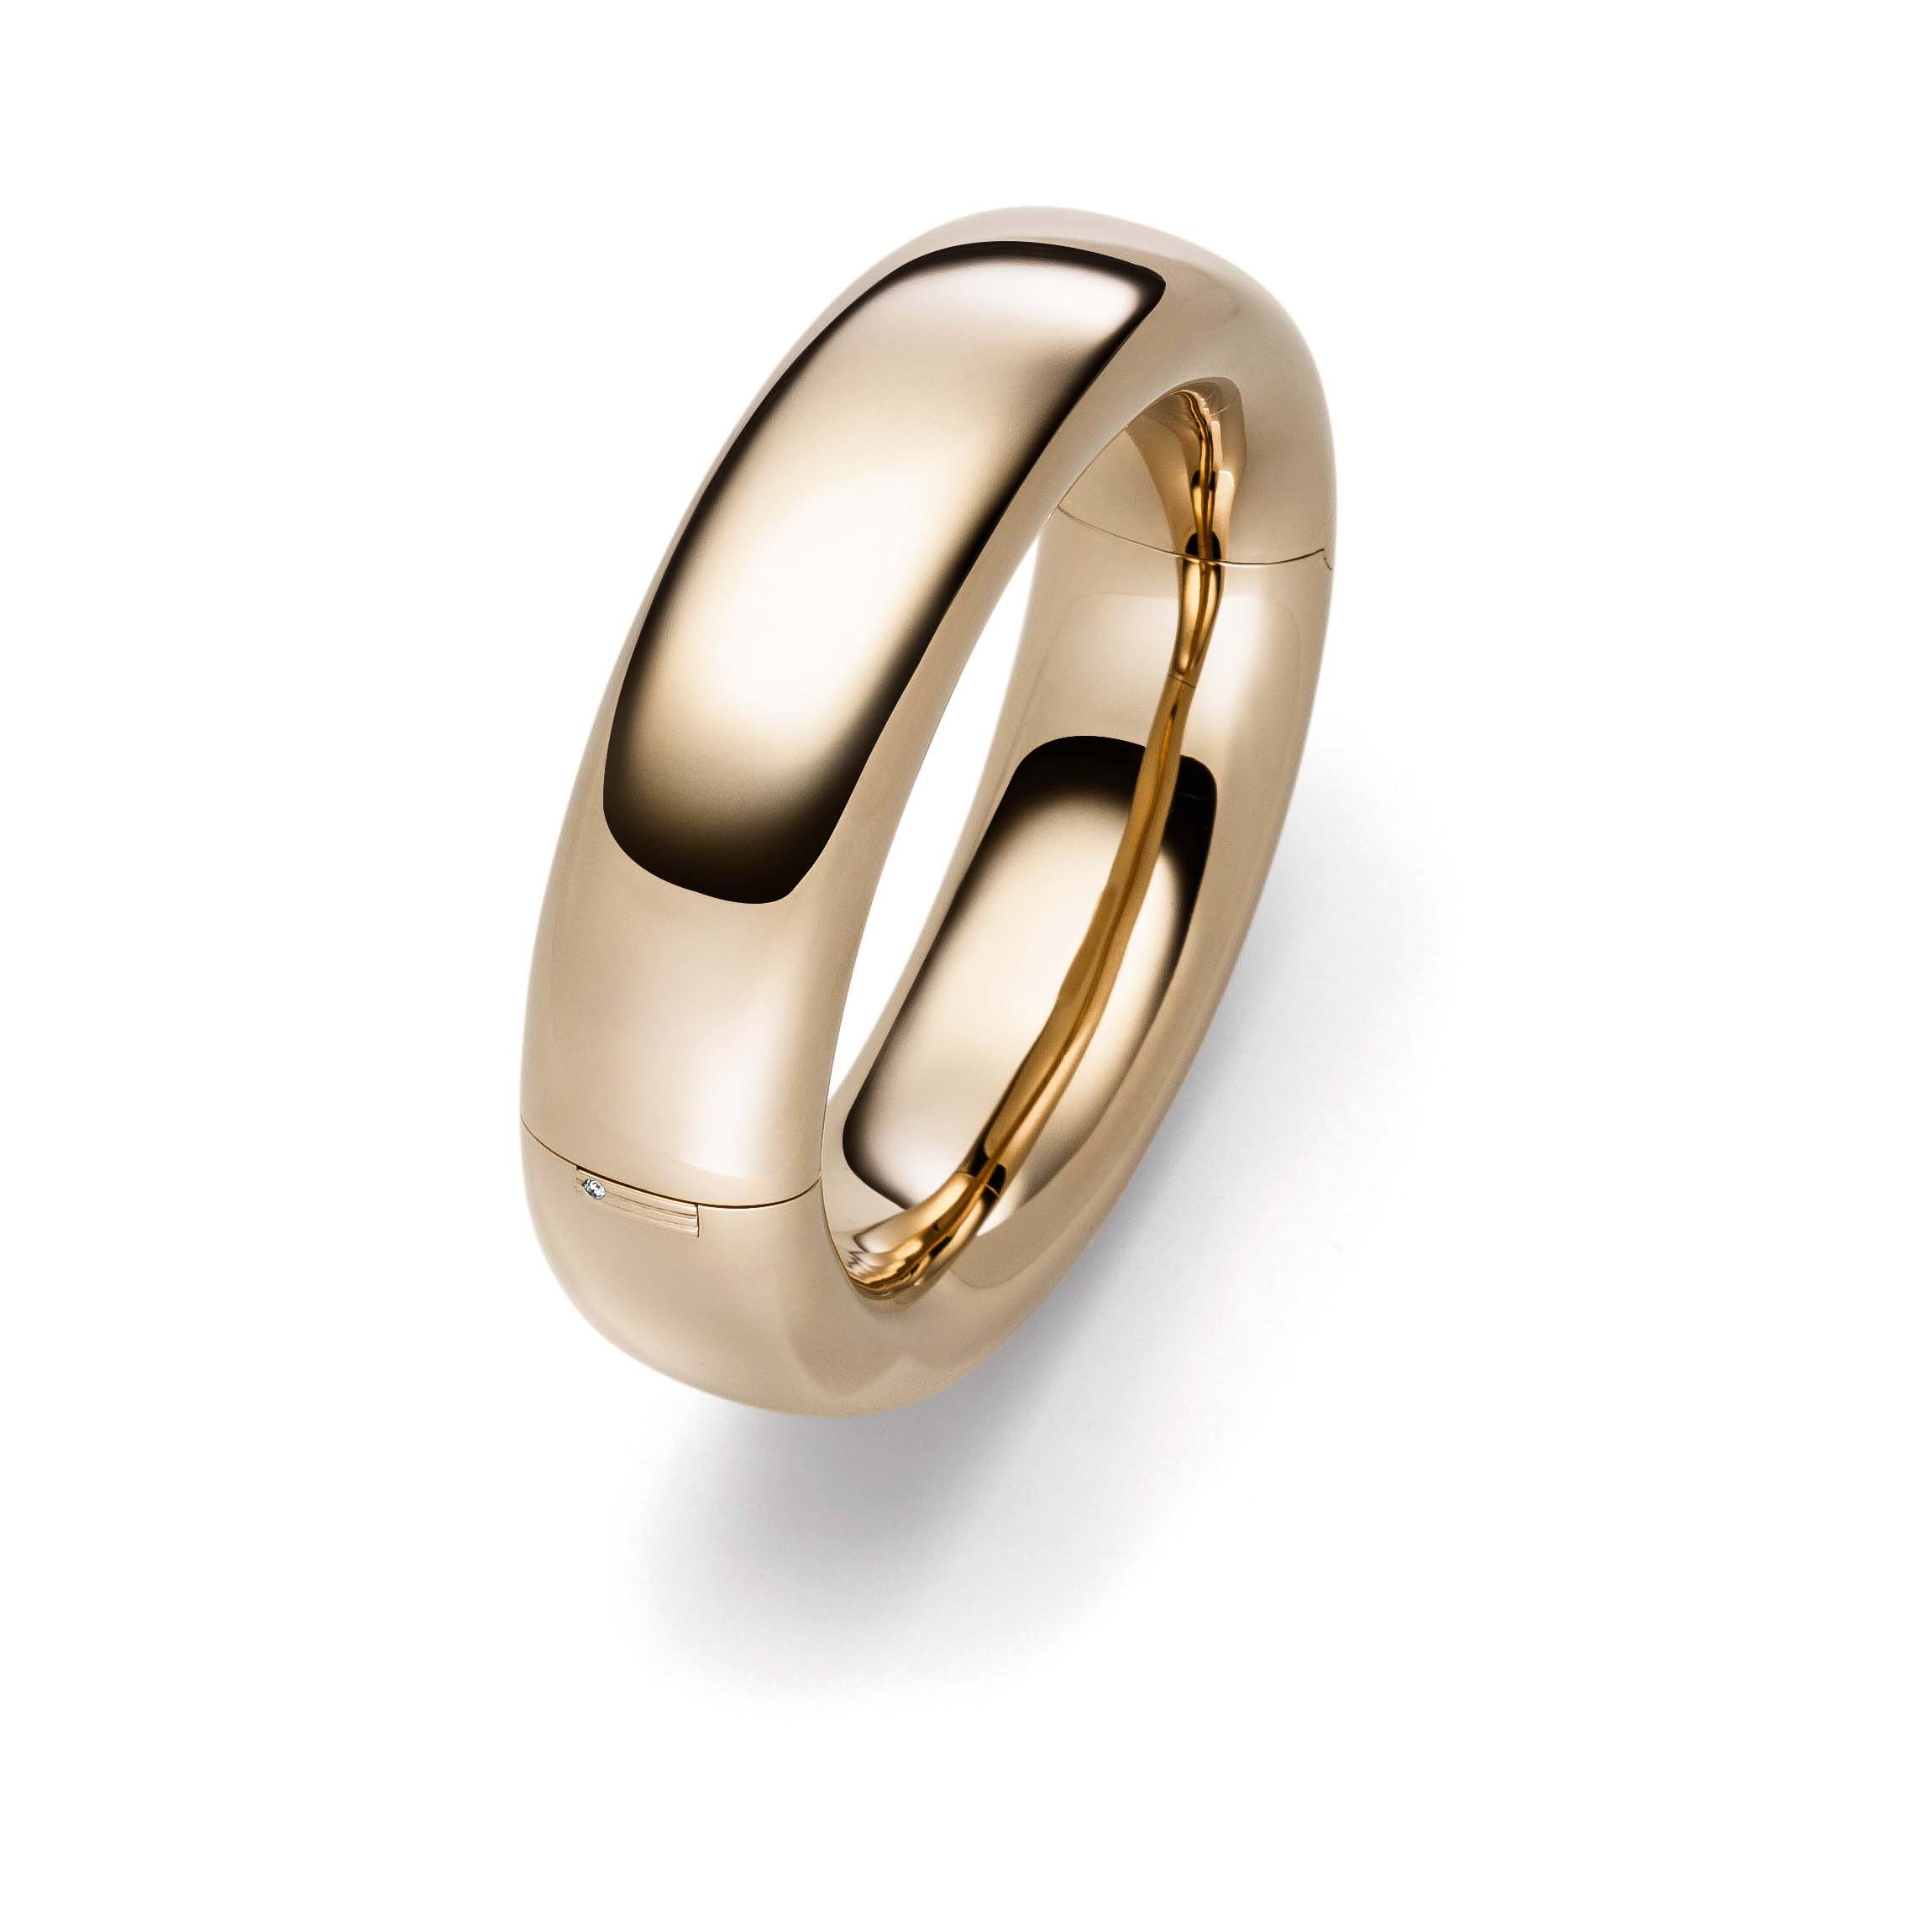 Vlastní továrna na prsteny pozlacené 18k žlutým zlatem přidejte k tomuto typu prstenu své logo